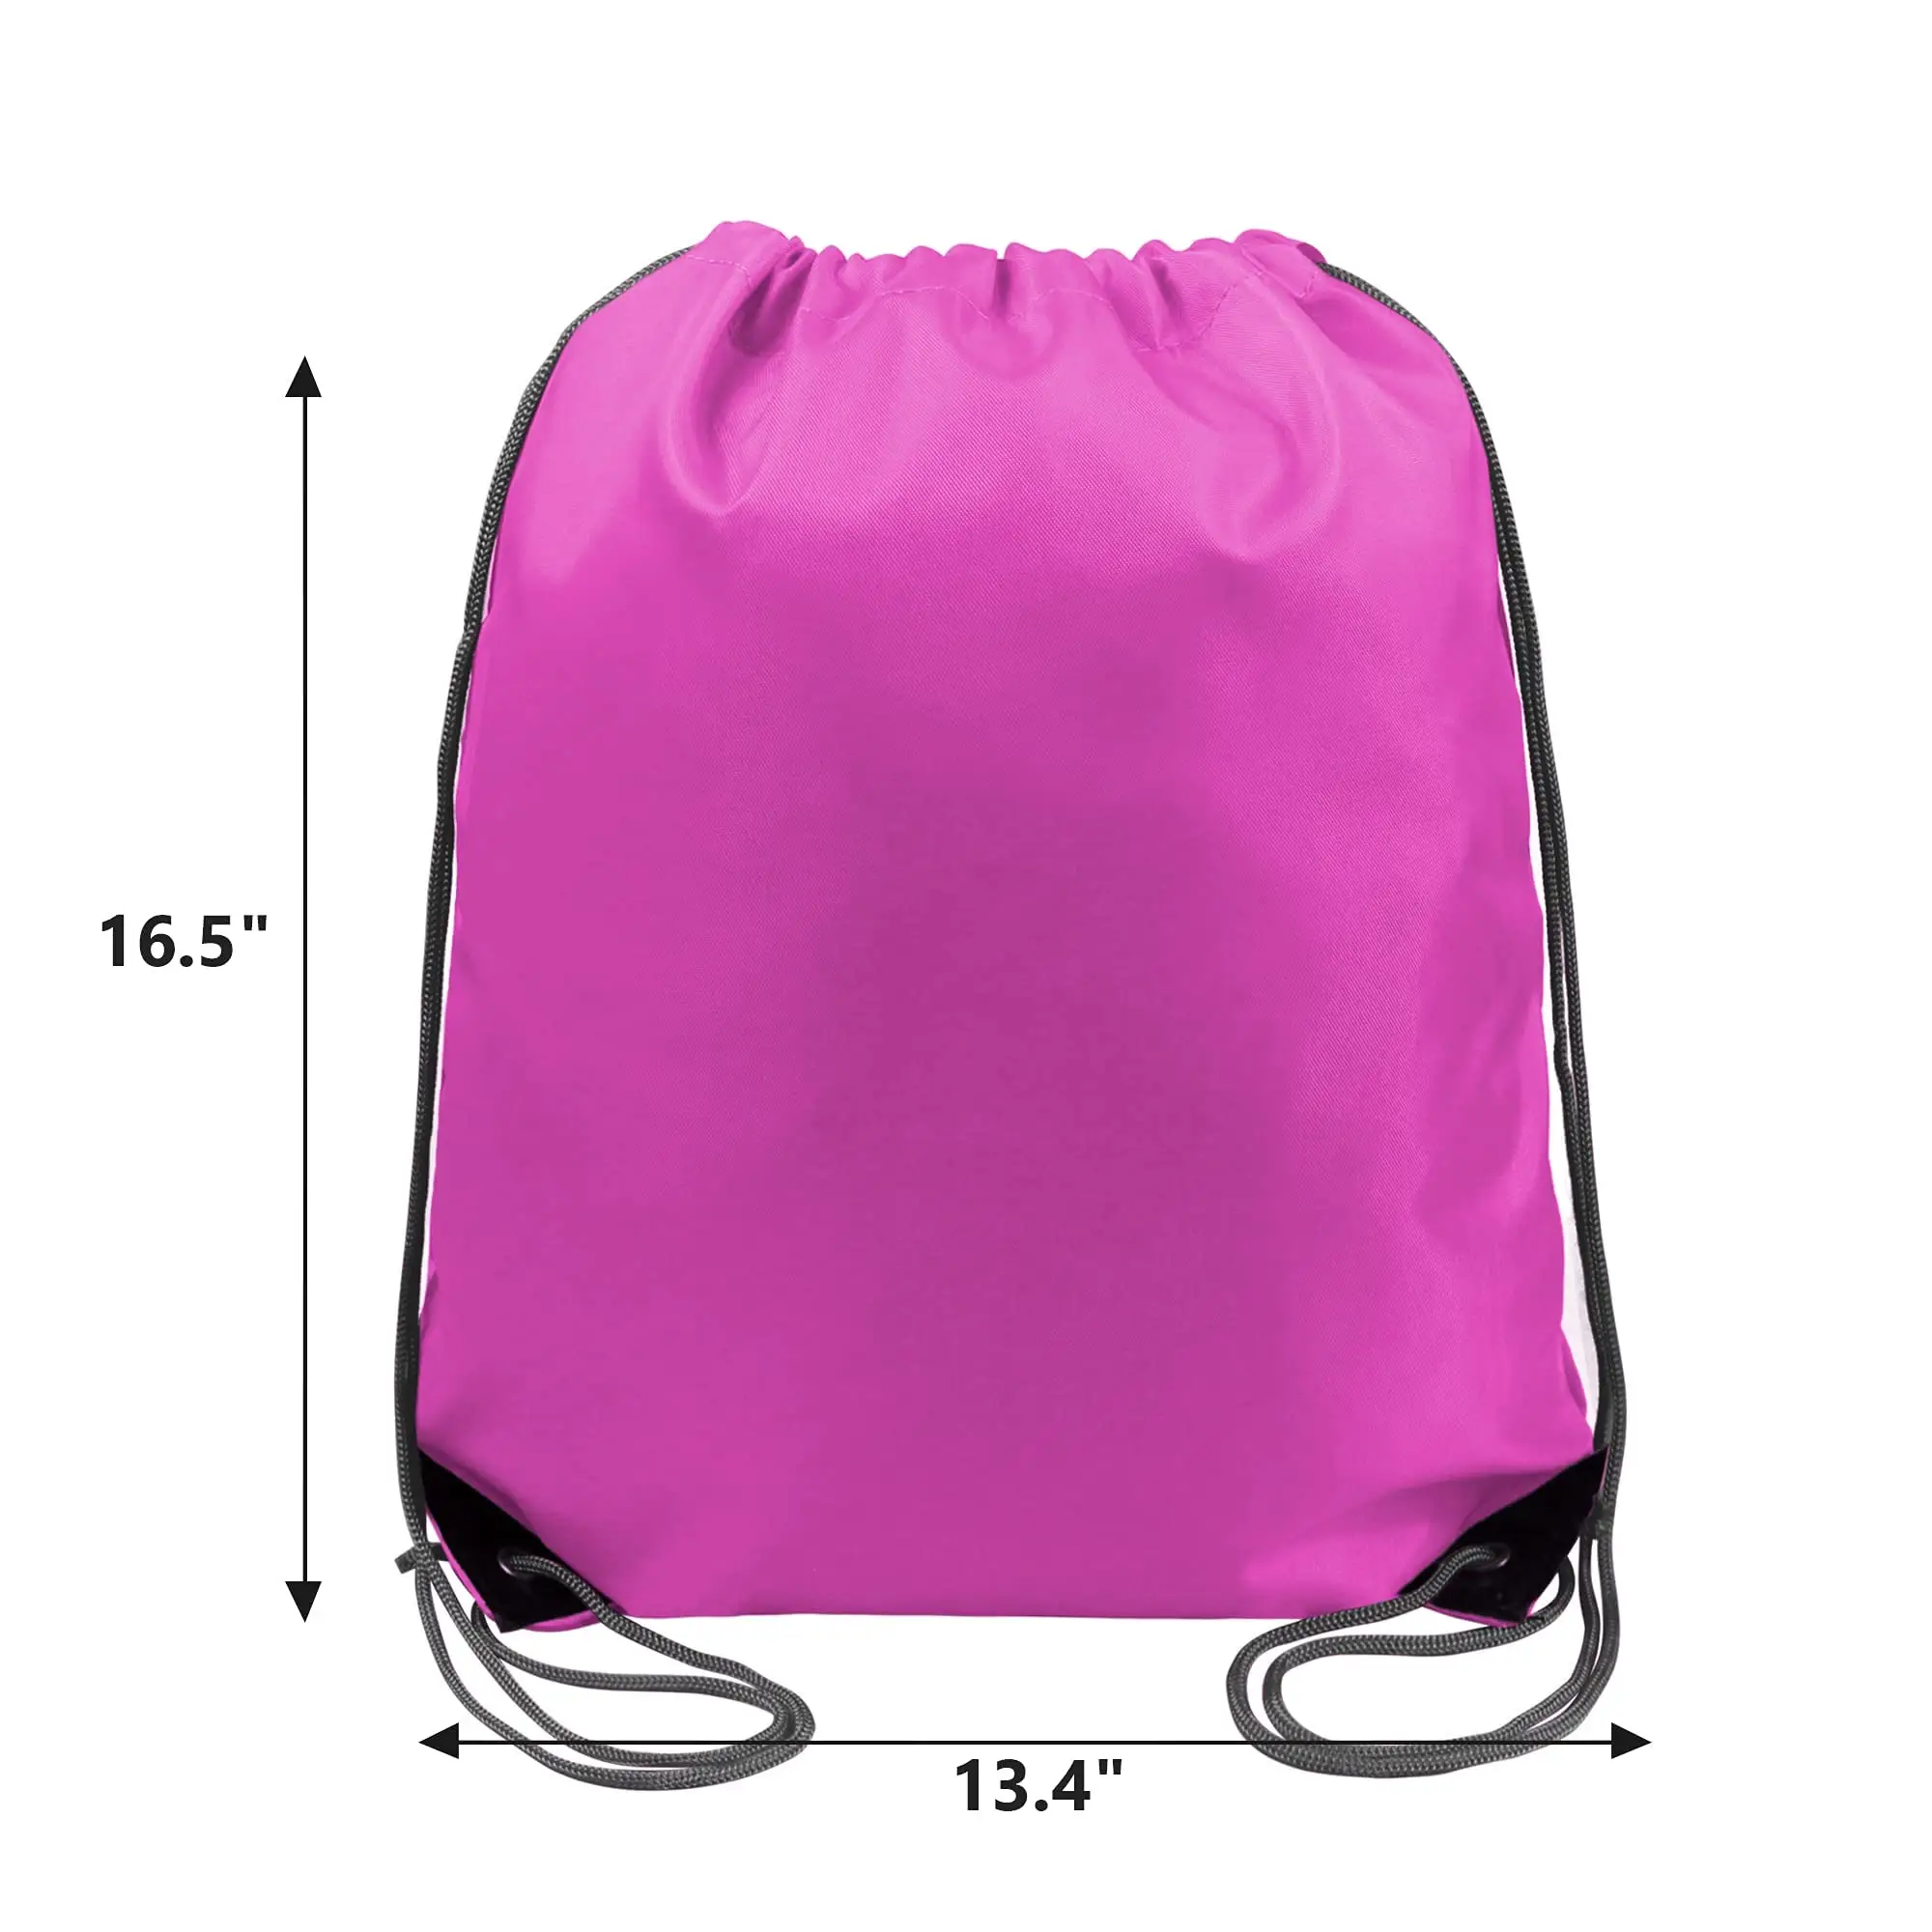 Bolsa de plástico personalizada de gran capacidad, ligera, fácil de llevar, bolsa de plástico con cordón, bolsa de plástico Rosa ecológica